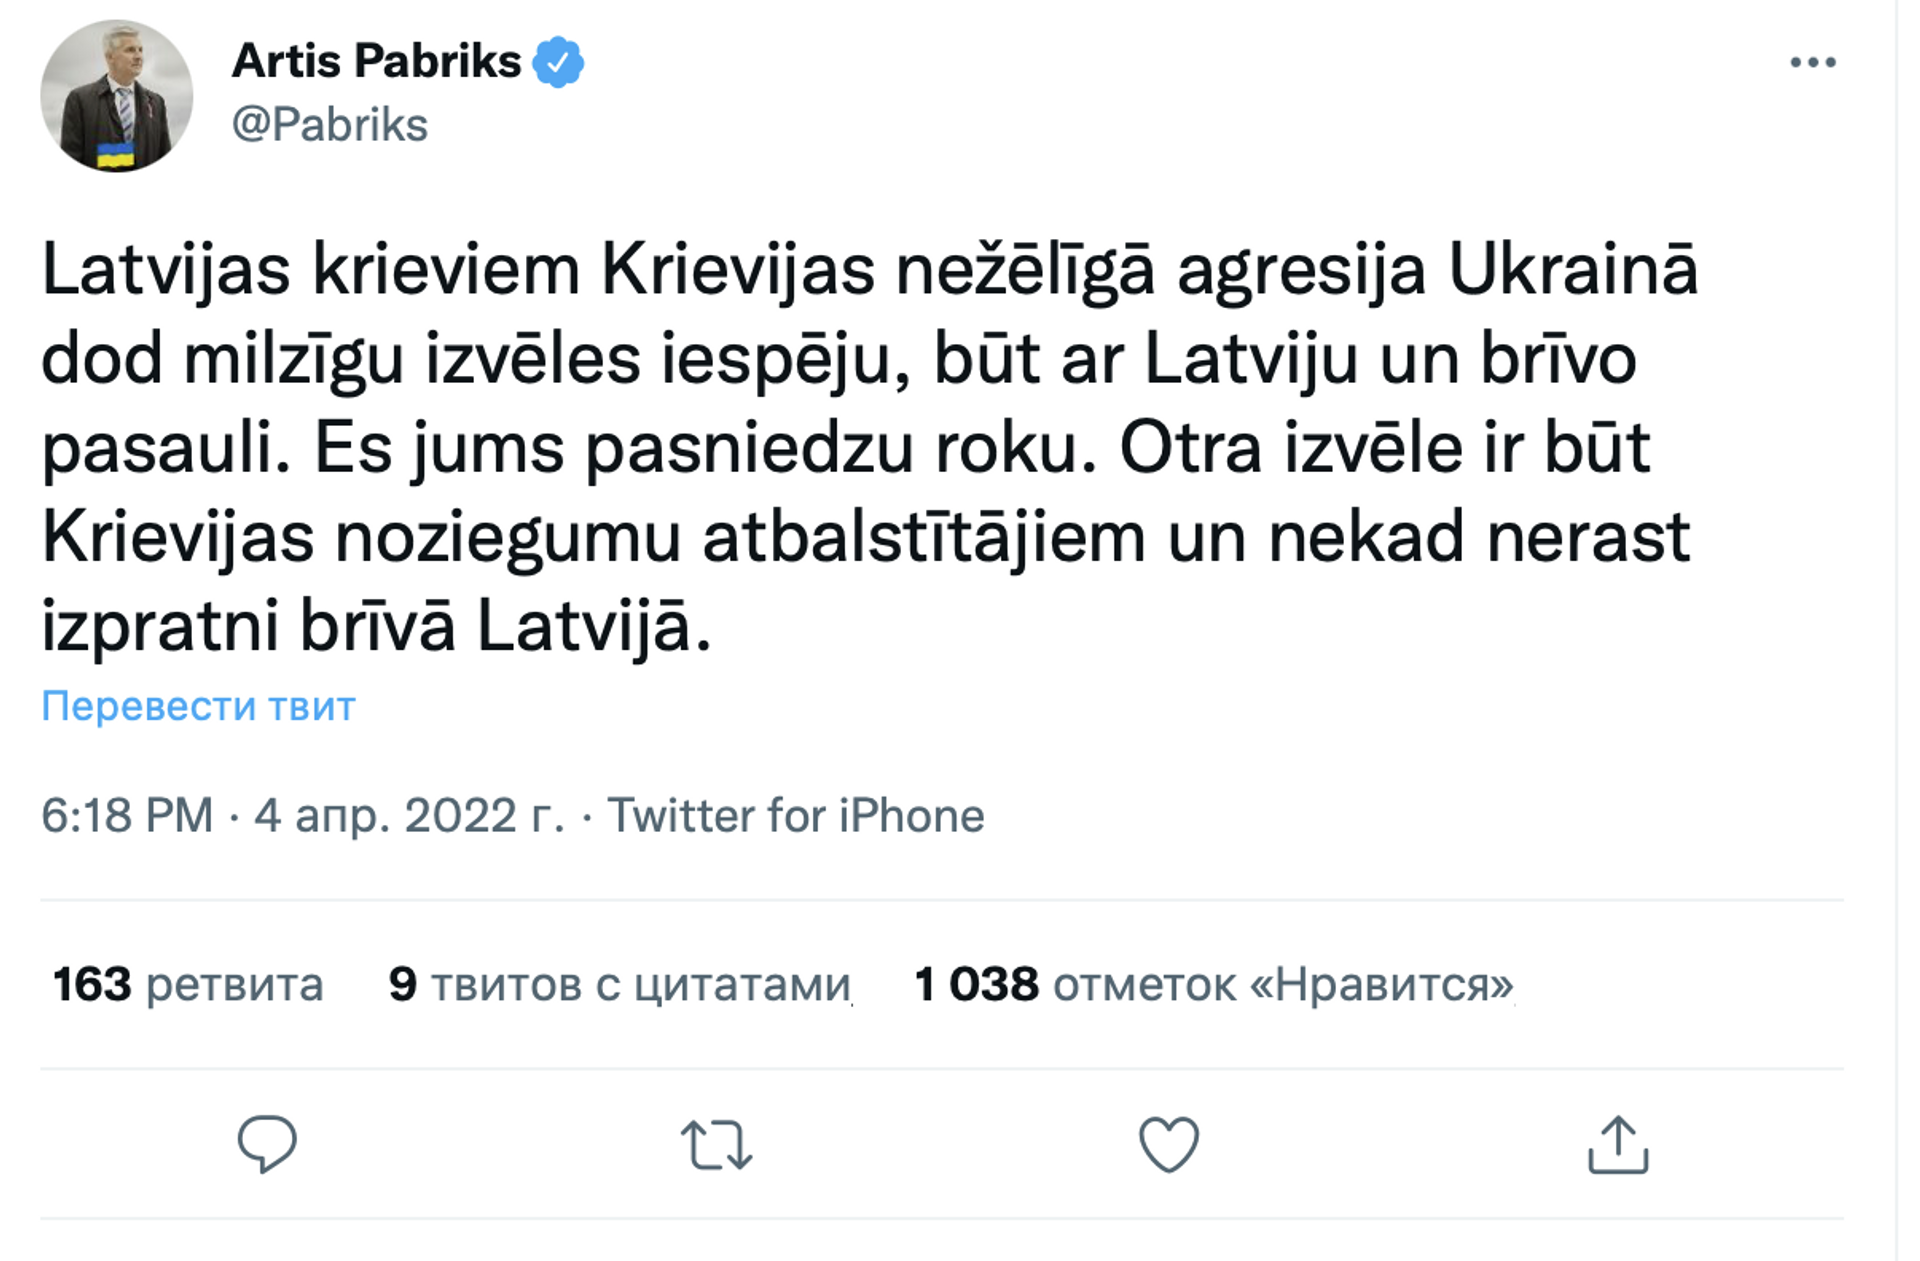 Скриншот поста в Twitter  - Sputnik Латвия, 1920, 05.04.2022